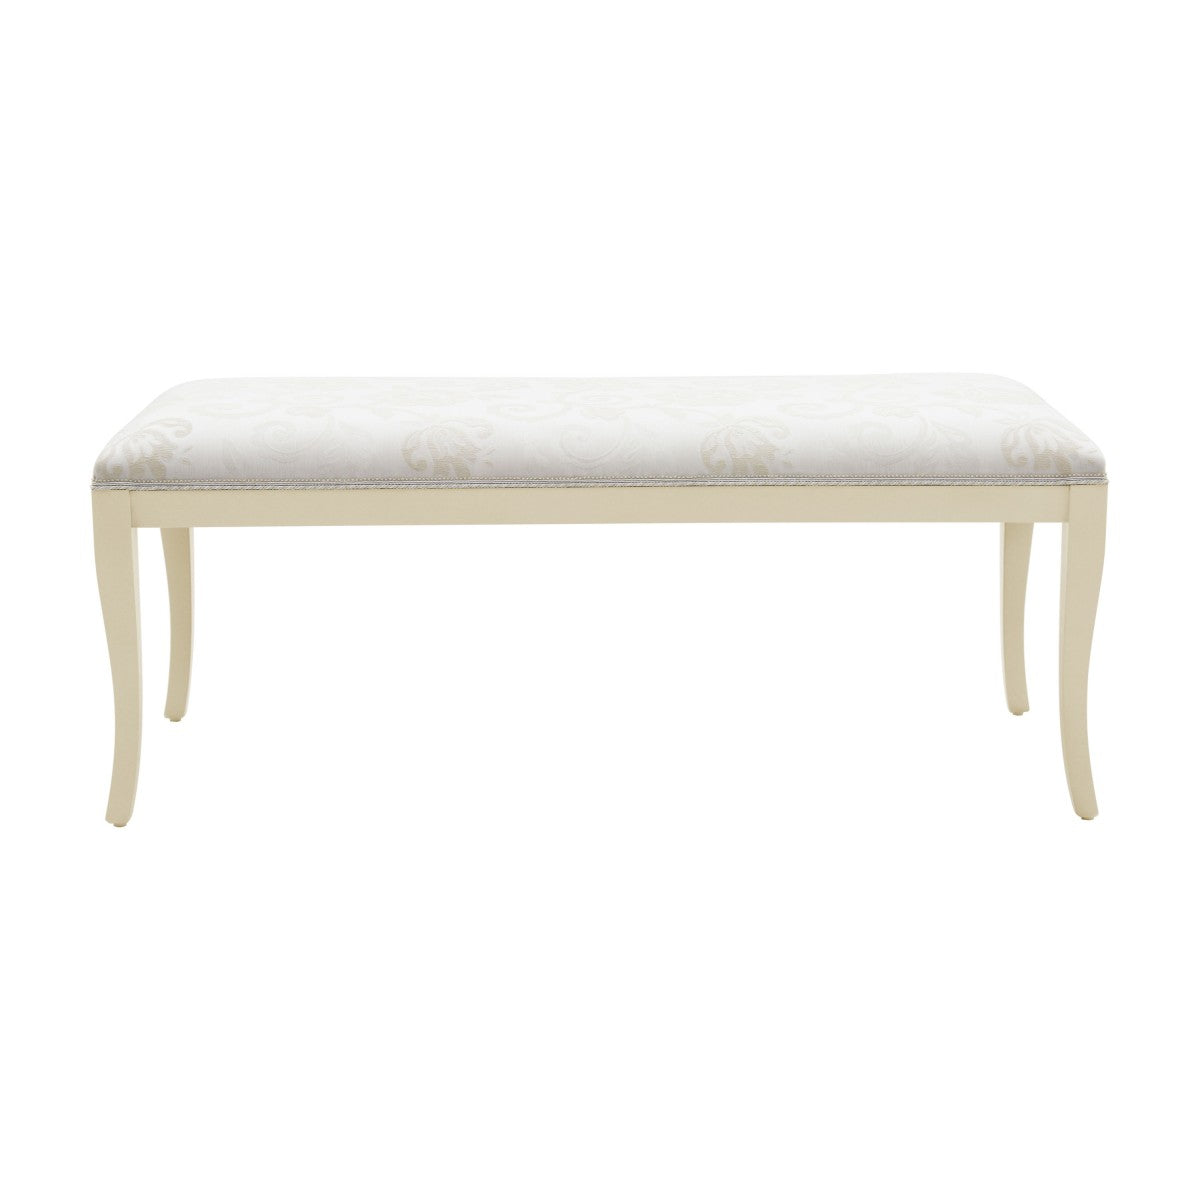 Radica Bespoke Upholstered Sleek Modern Style Bench MS283Q Custom Made To Order